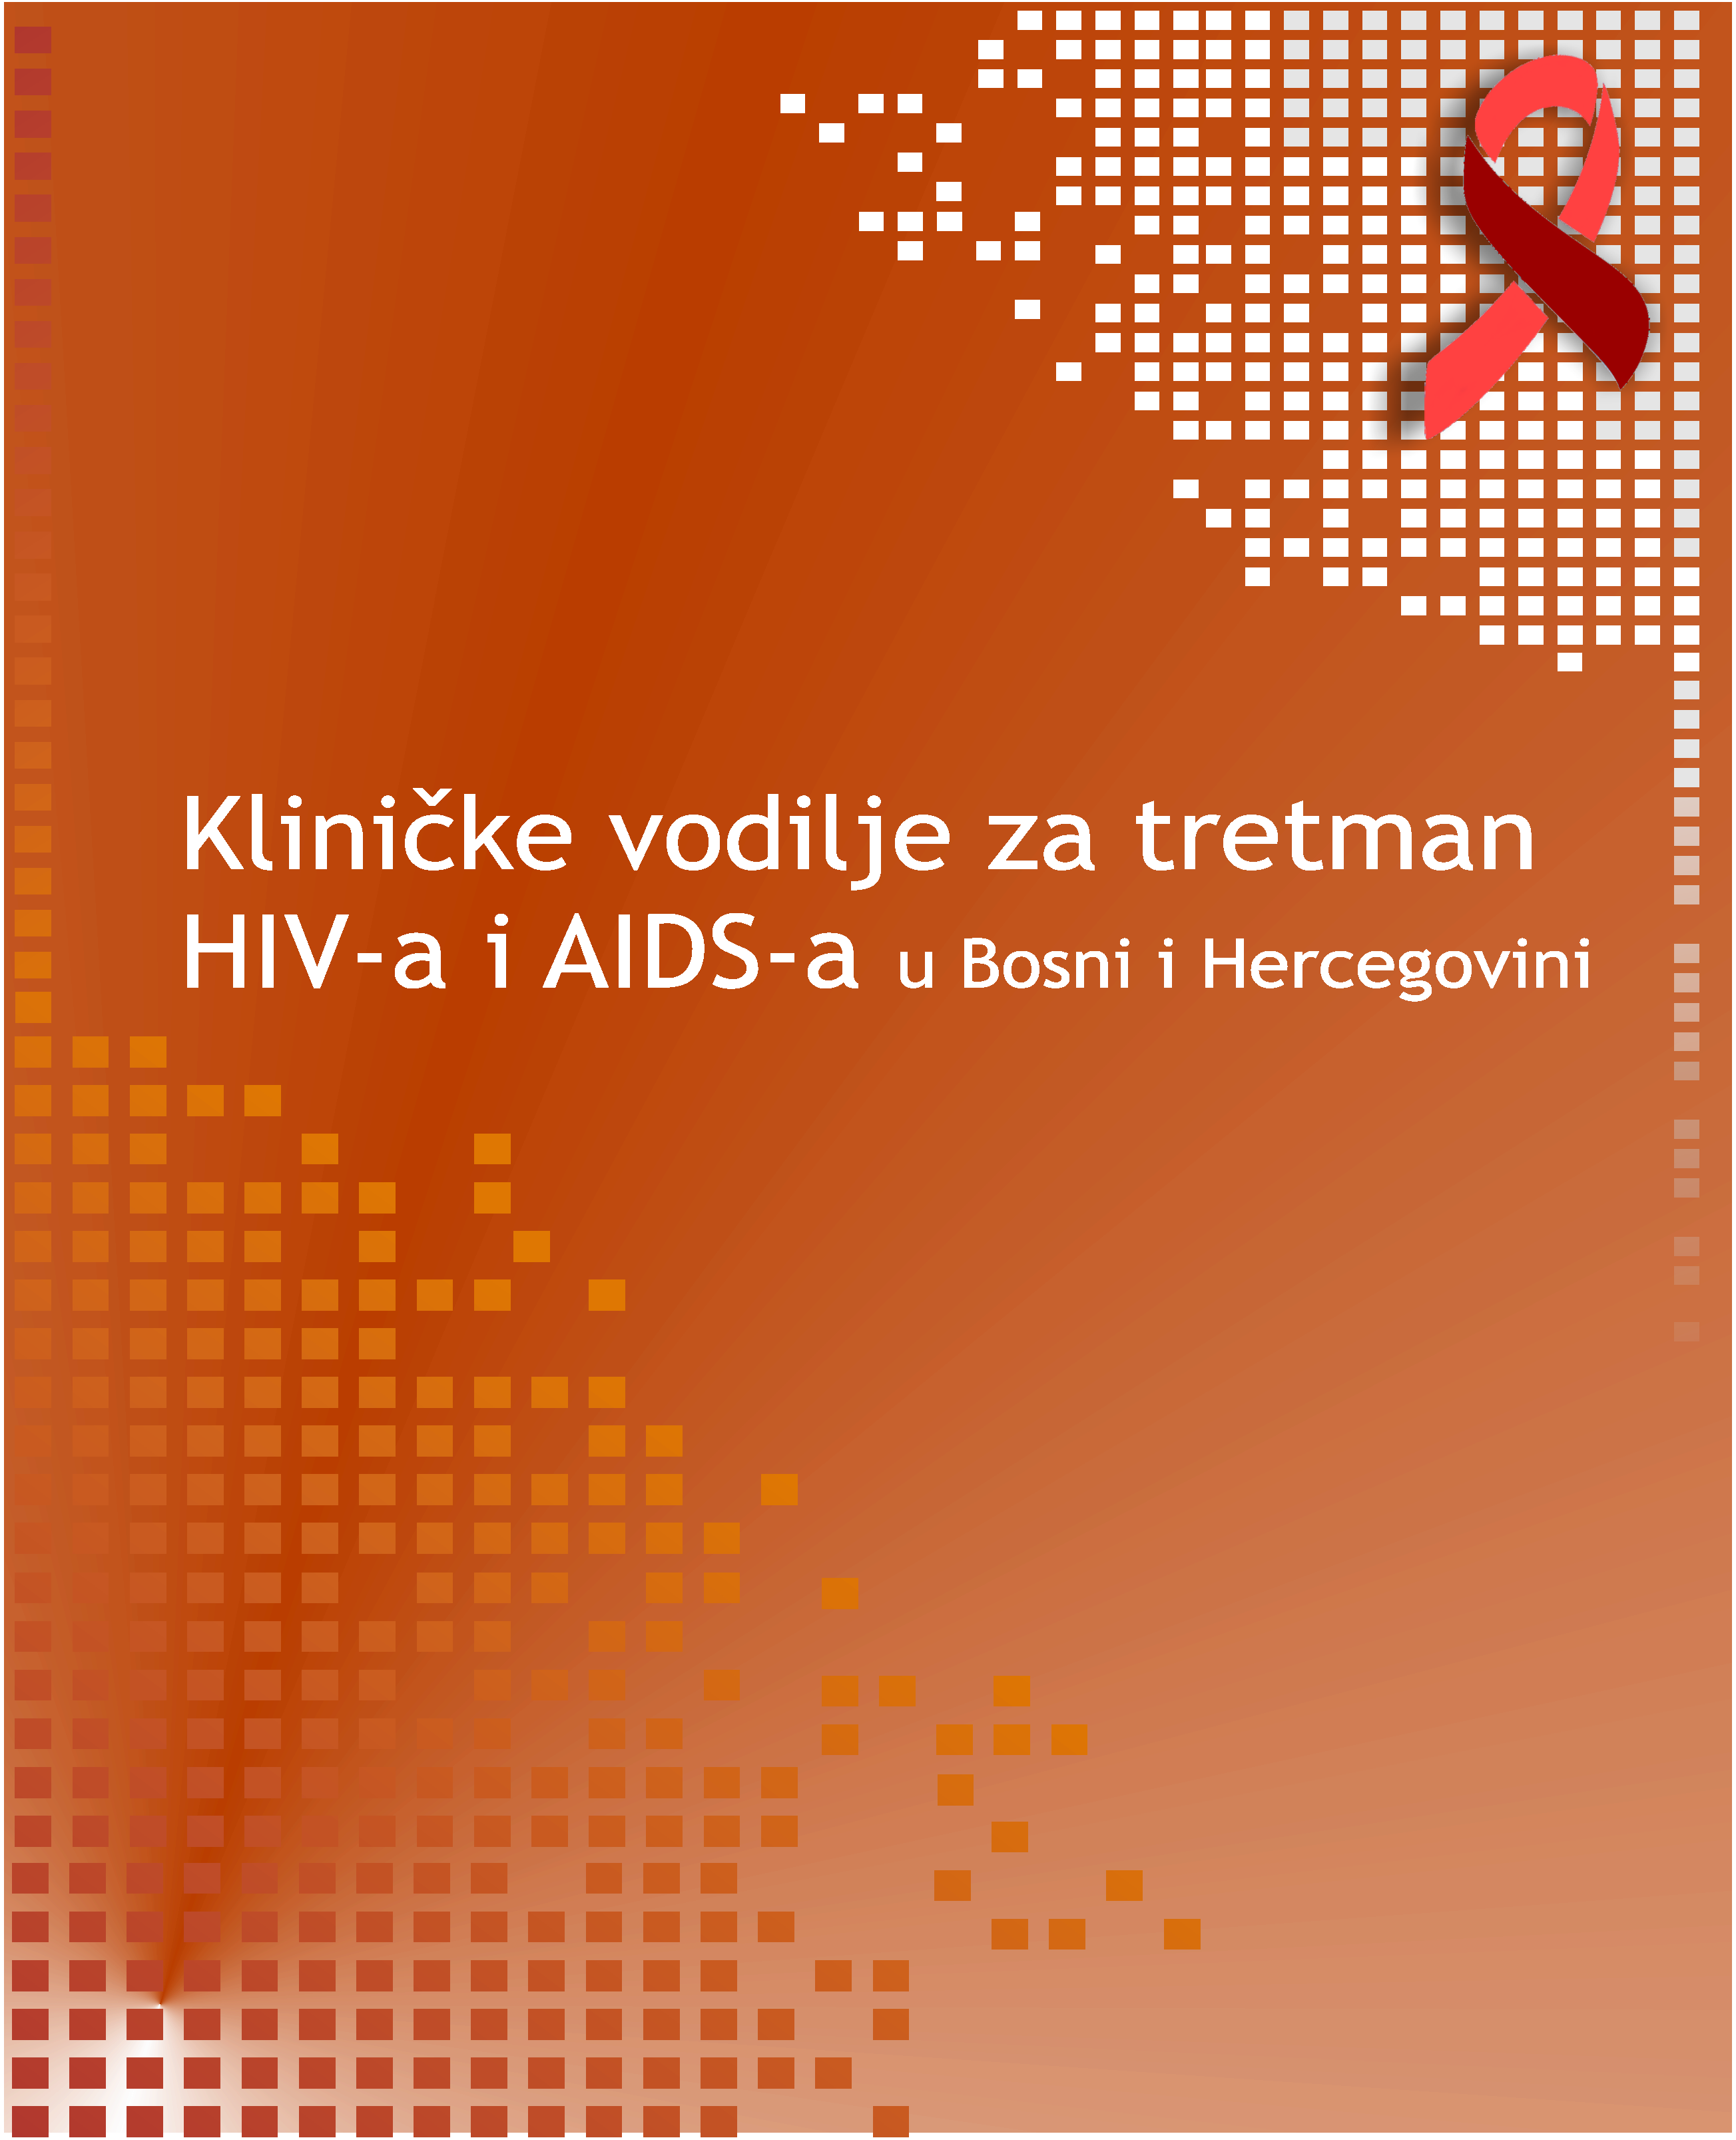 Kliničke vodilje za tretman HIV-a i AIDS-a u Bosni i Hercegovini, 2013. godina